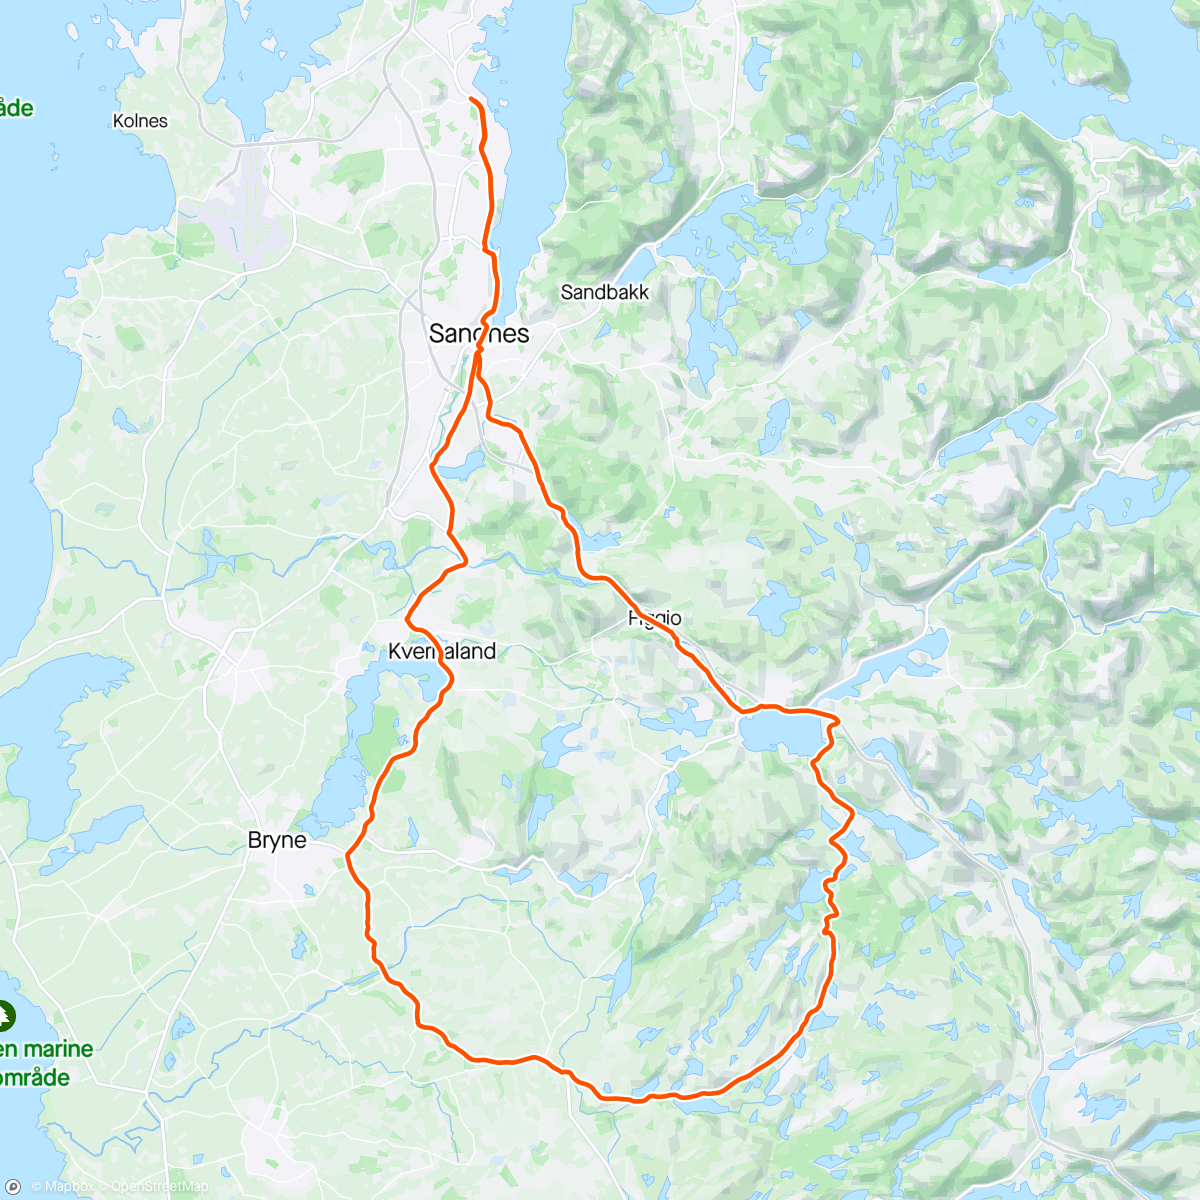 Mapa da atividade, Sikvaland ❤️